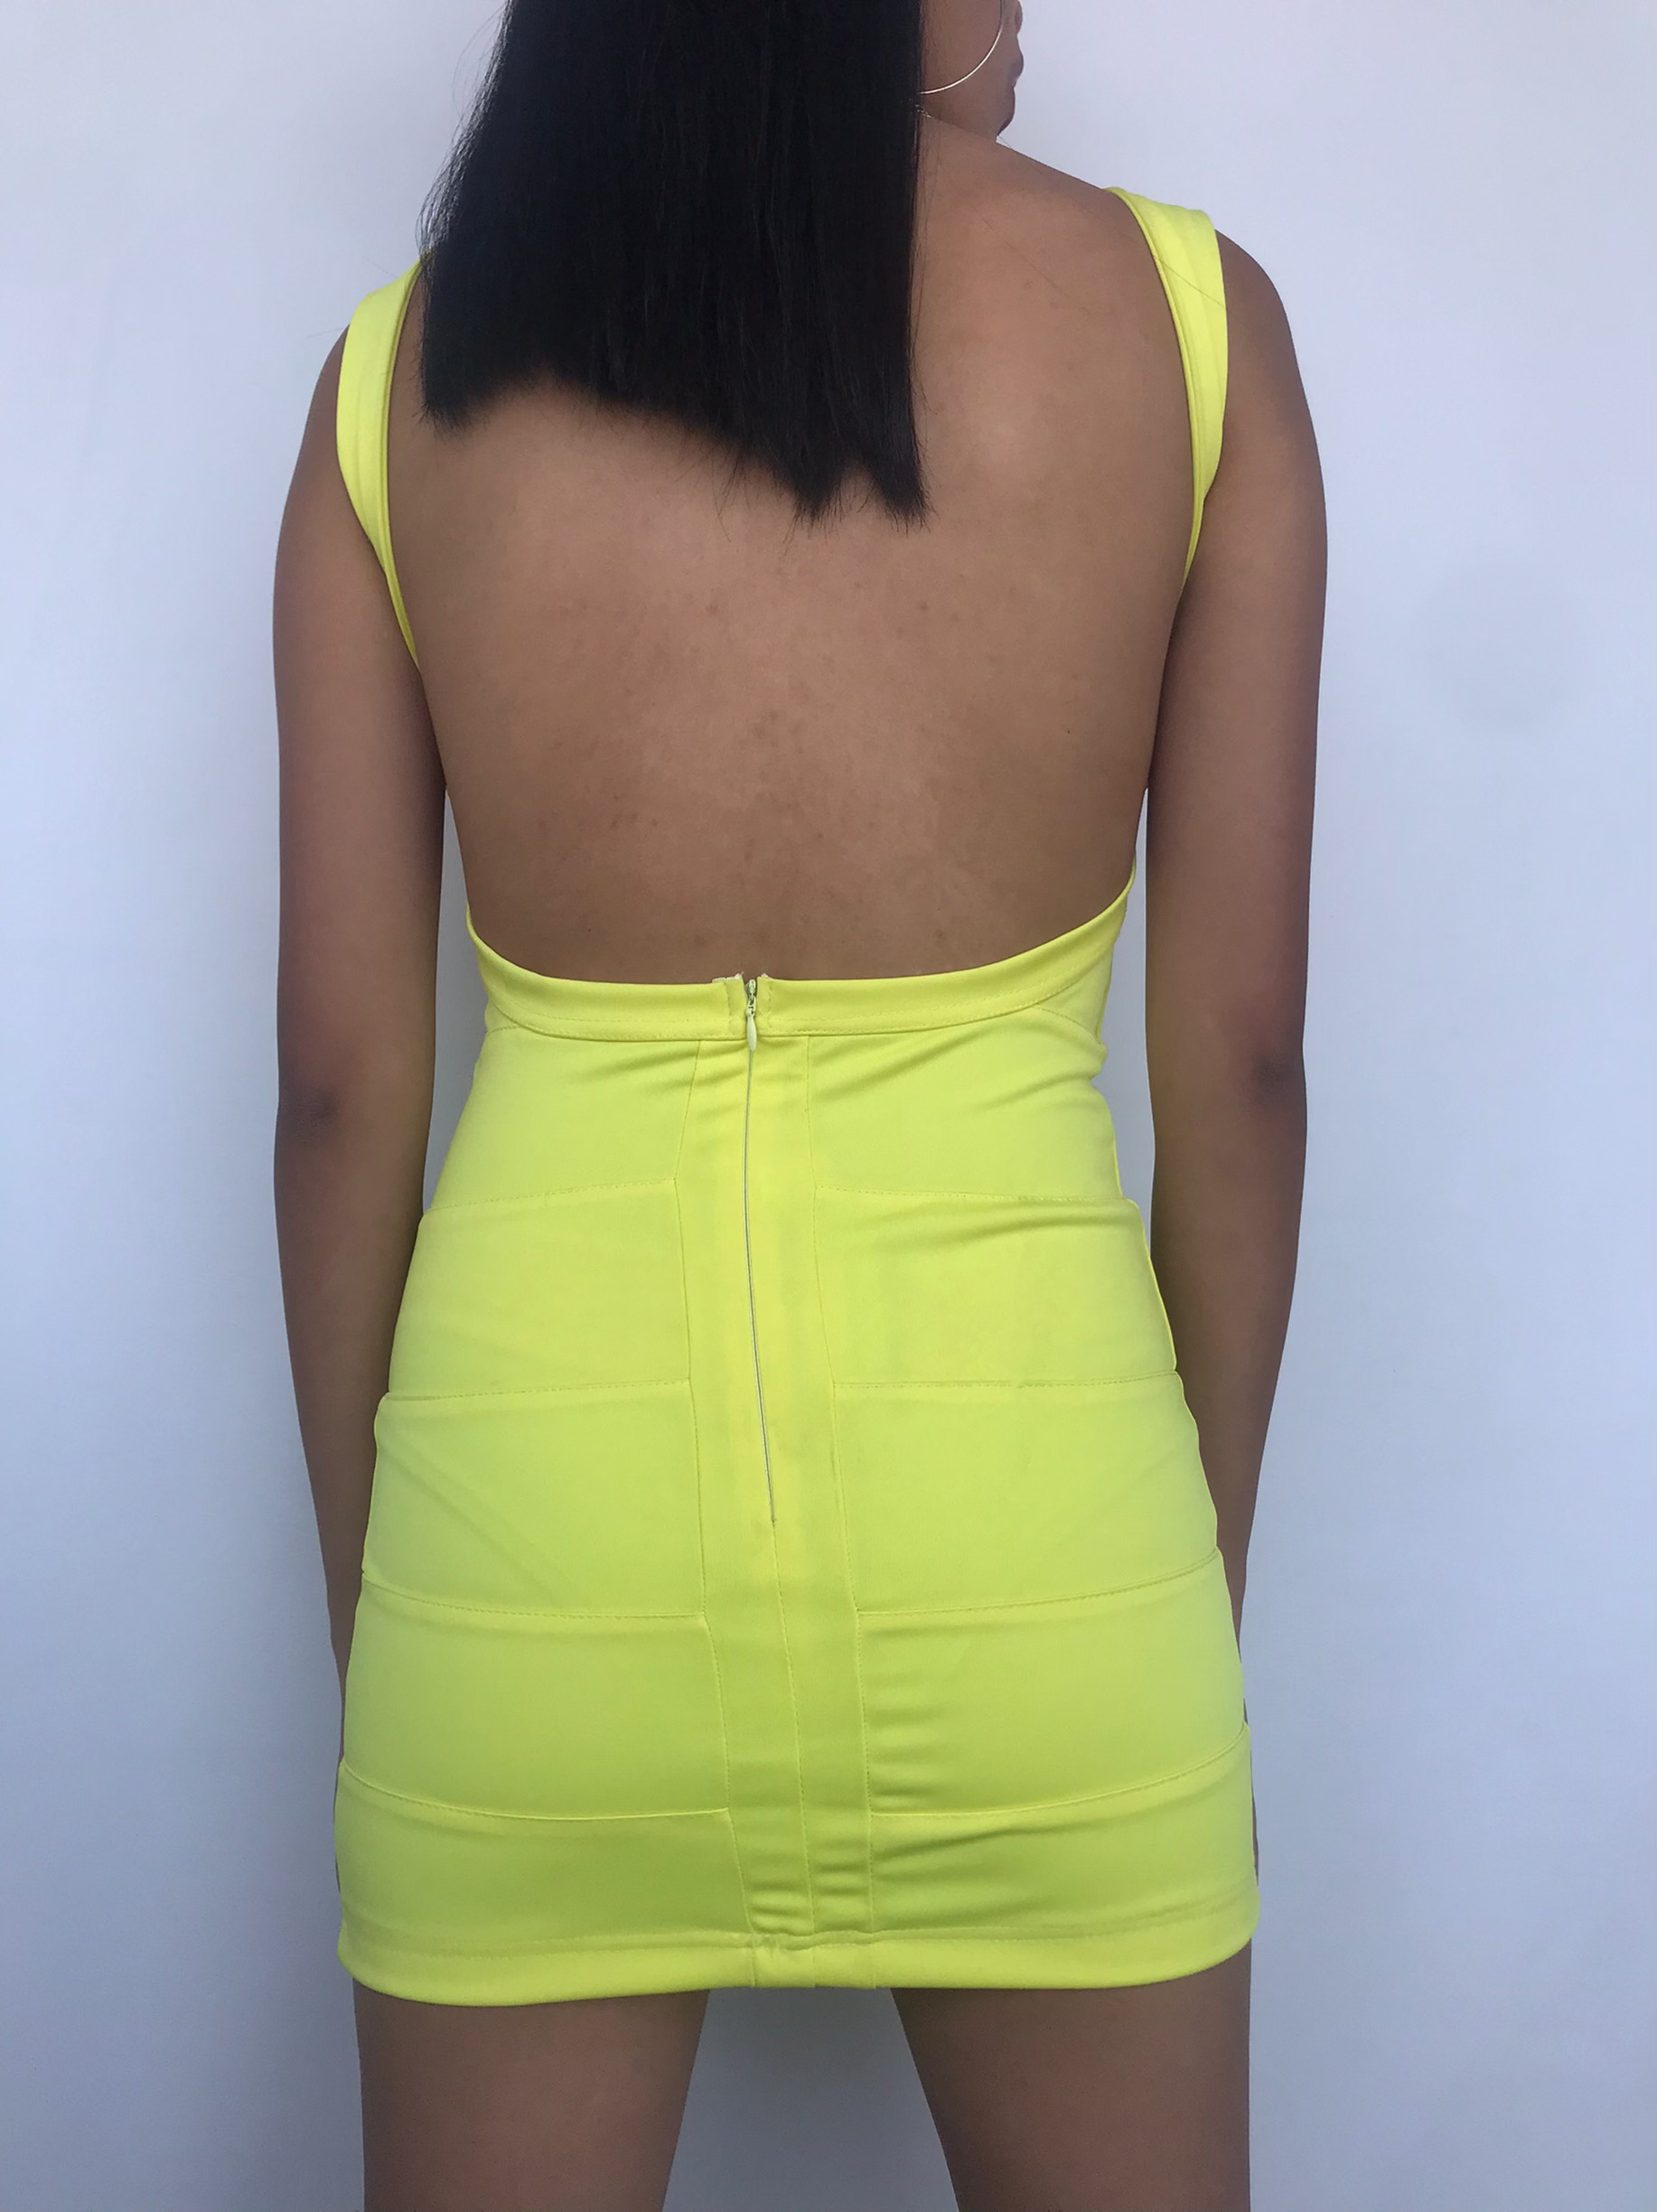 Vestido amarillo con cortes, espalda descubierta y cierre posterior. Nuevo con etiqueta
Talla XS